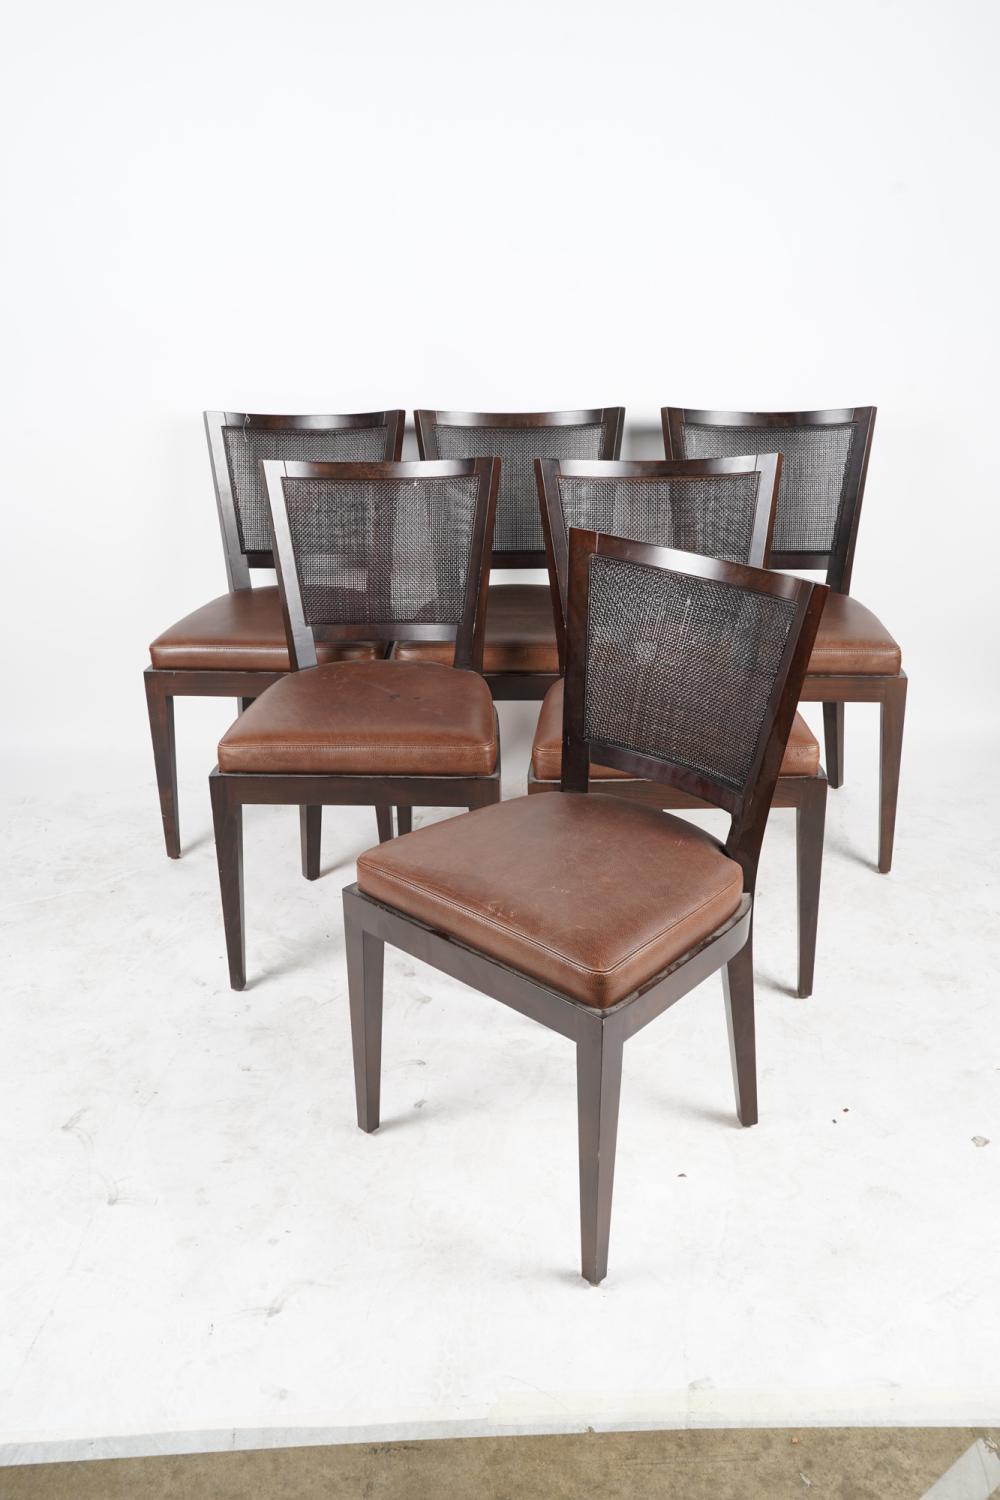 Ensemble de 6 chaises de salle à manger contemporaines Promemoria en bois dur et cuir en très bon état, datant des années 2000. Ces chaises sont toujours fabriquées par Promemoria aujourd'hui.